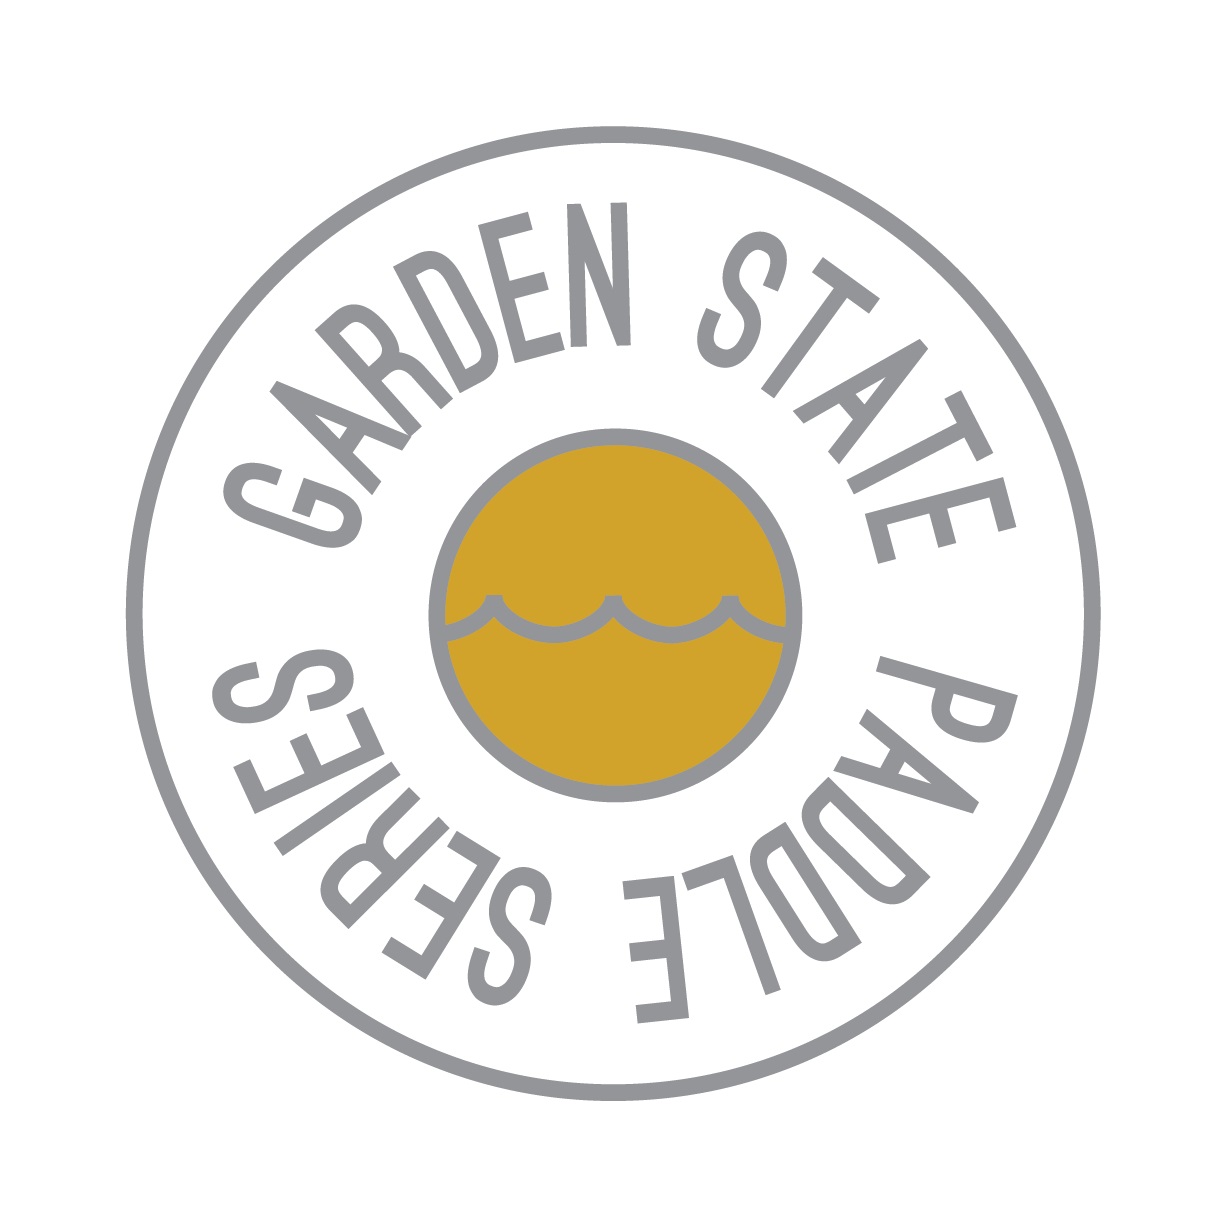 GSPS-logo-token-final.jpg